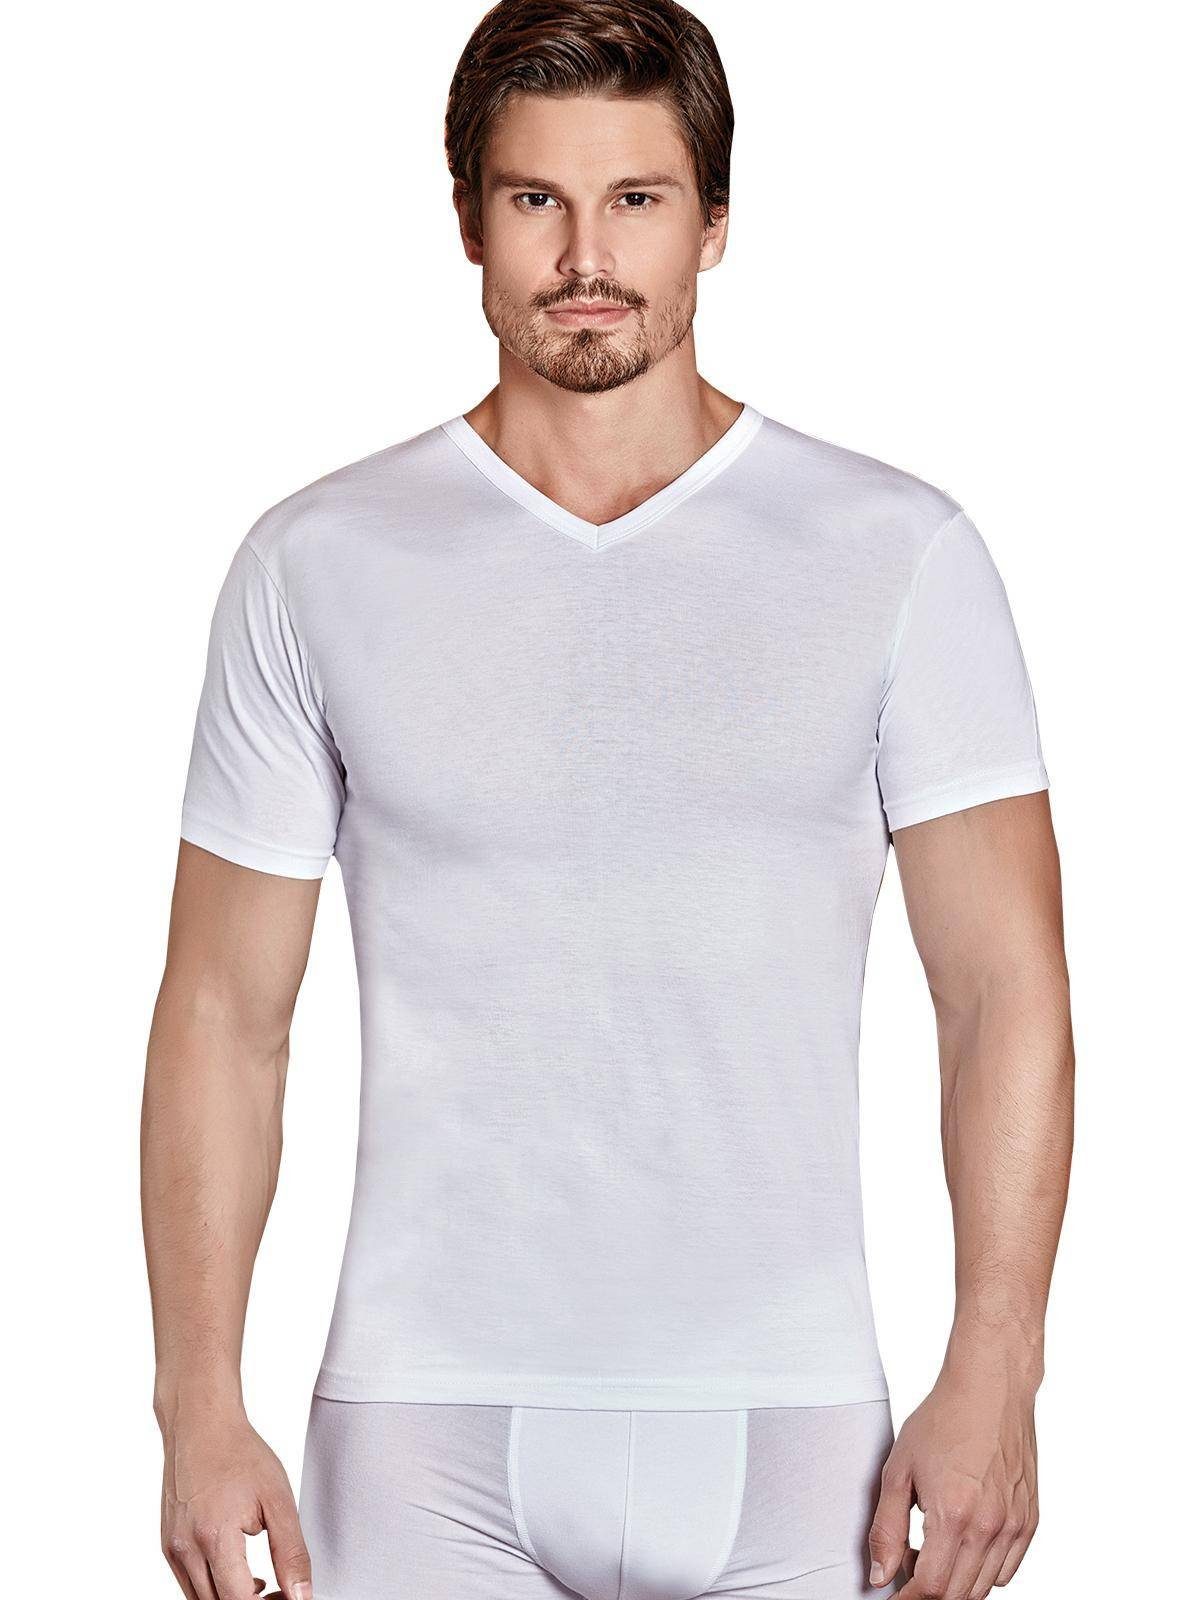 Berrak Collection Unterhemd Kurzarm V-Ausschnitt Herren Business Shirt Weiß, BS1007 | Unterhemden